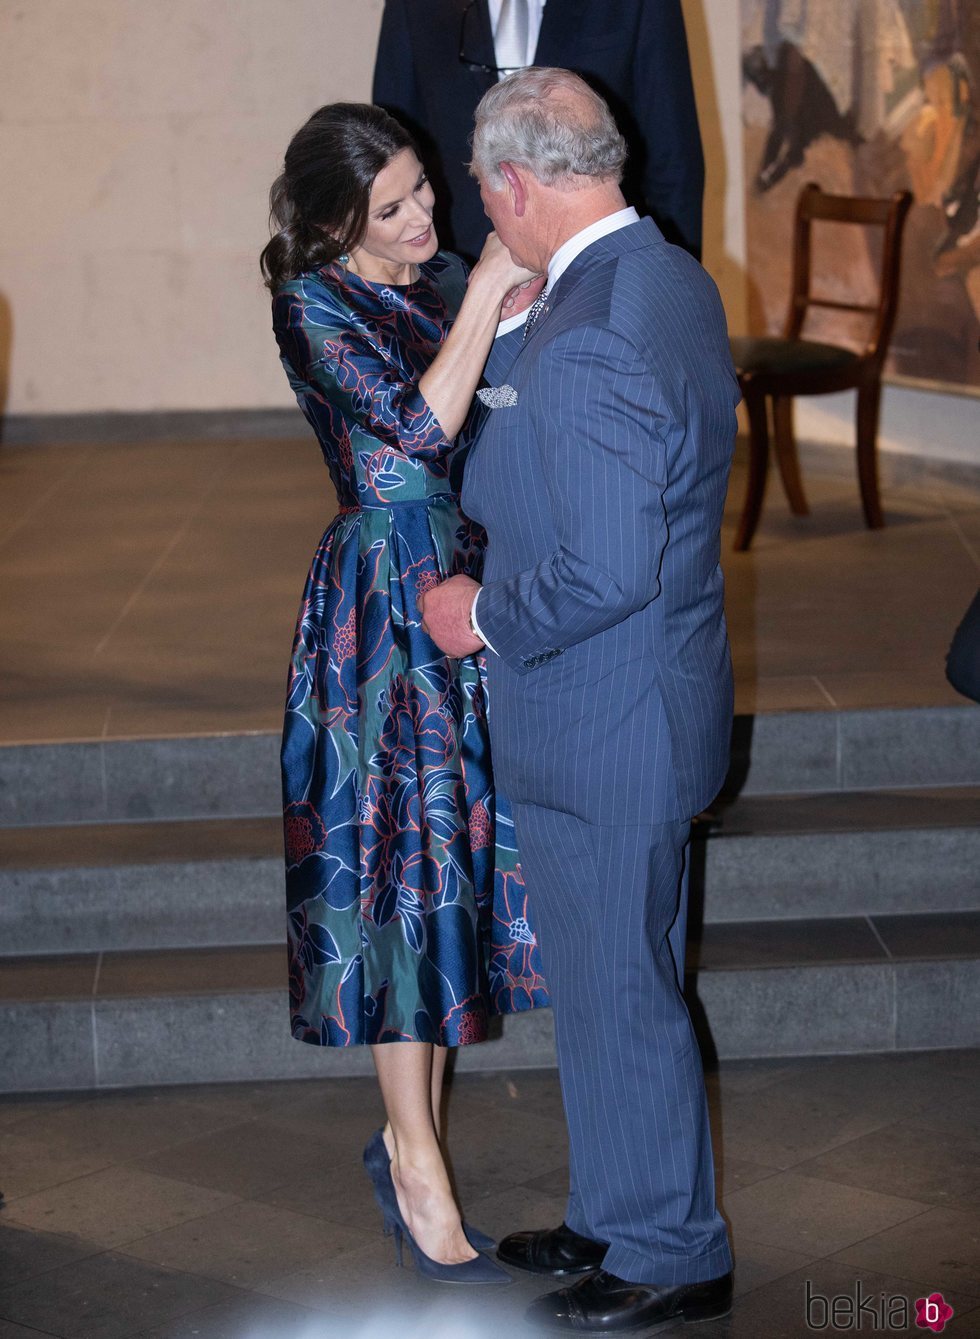 La Reina Letizia y el Príncipe Carlos saludándose con mucho cariño en la inauguración de la Exposición 'Sorolla: Spanish Master of Light'